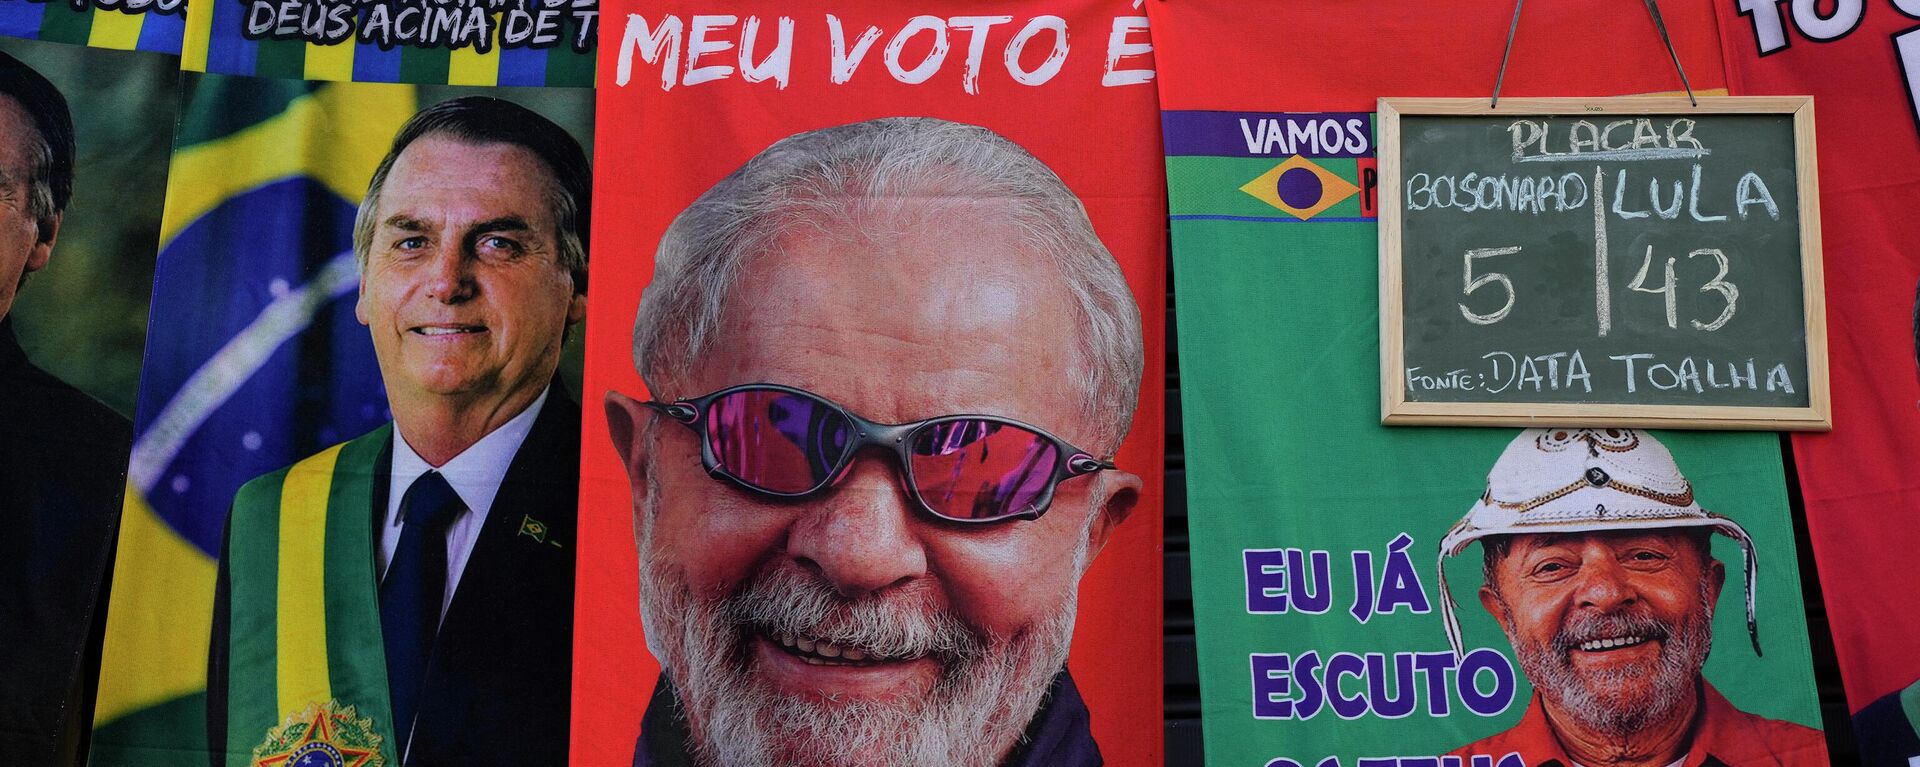 Retratos de Lula y Bolsonaro en unos carteles  - Sputnik Mundo, 1920, 21.09.2022